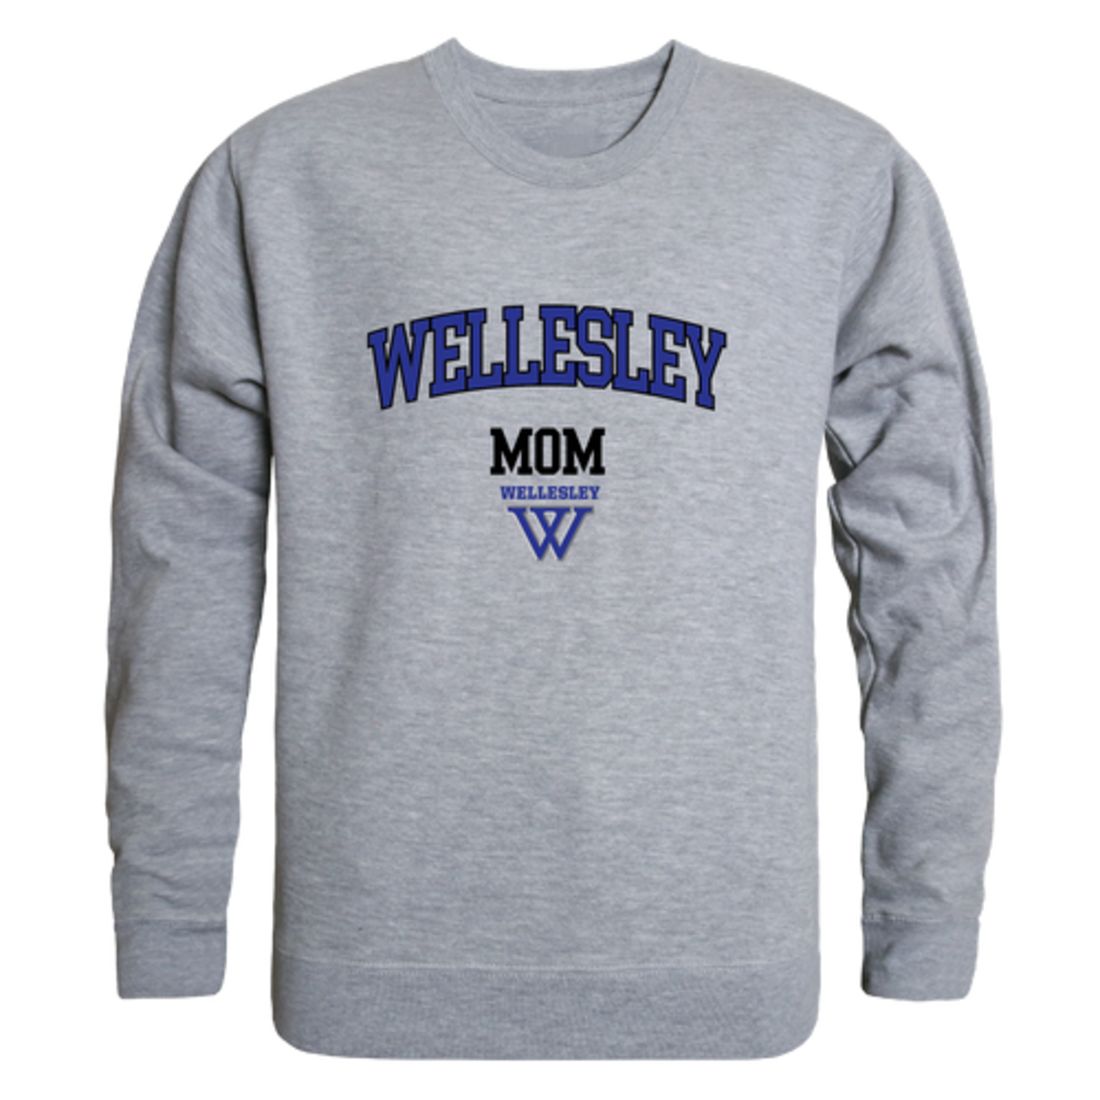 Wellesley College Blue Mom Fleece Crewneck Pullover Sweatshirt